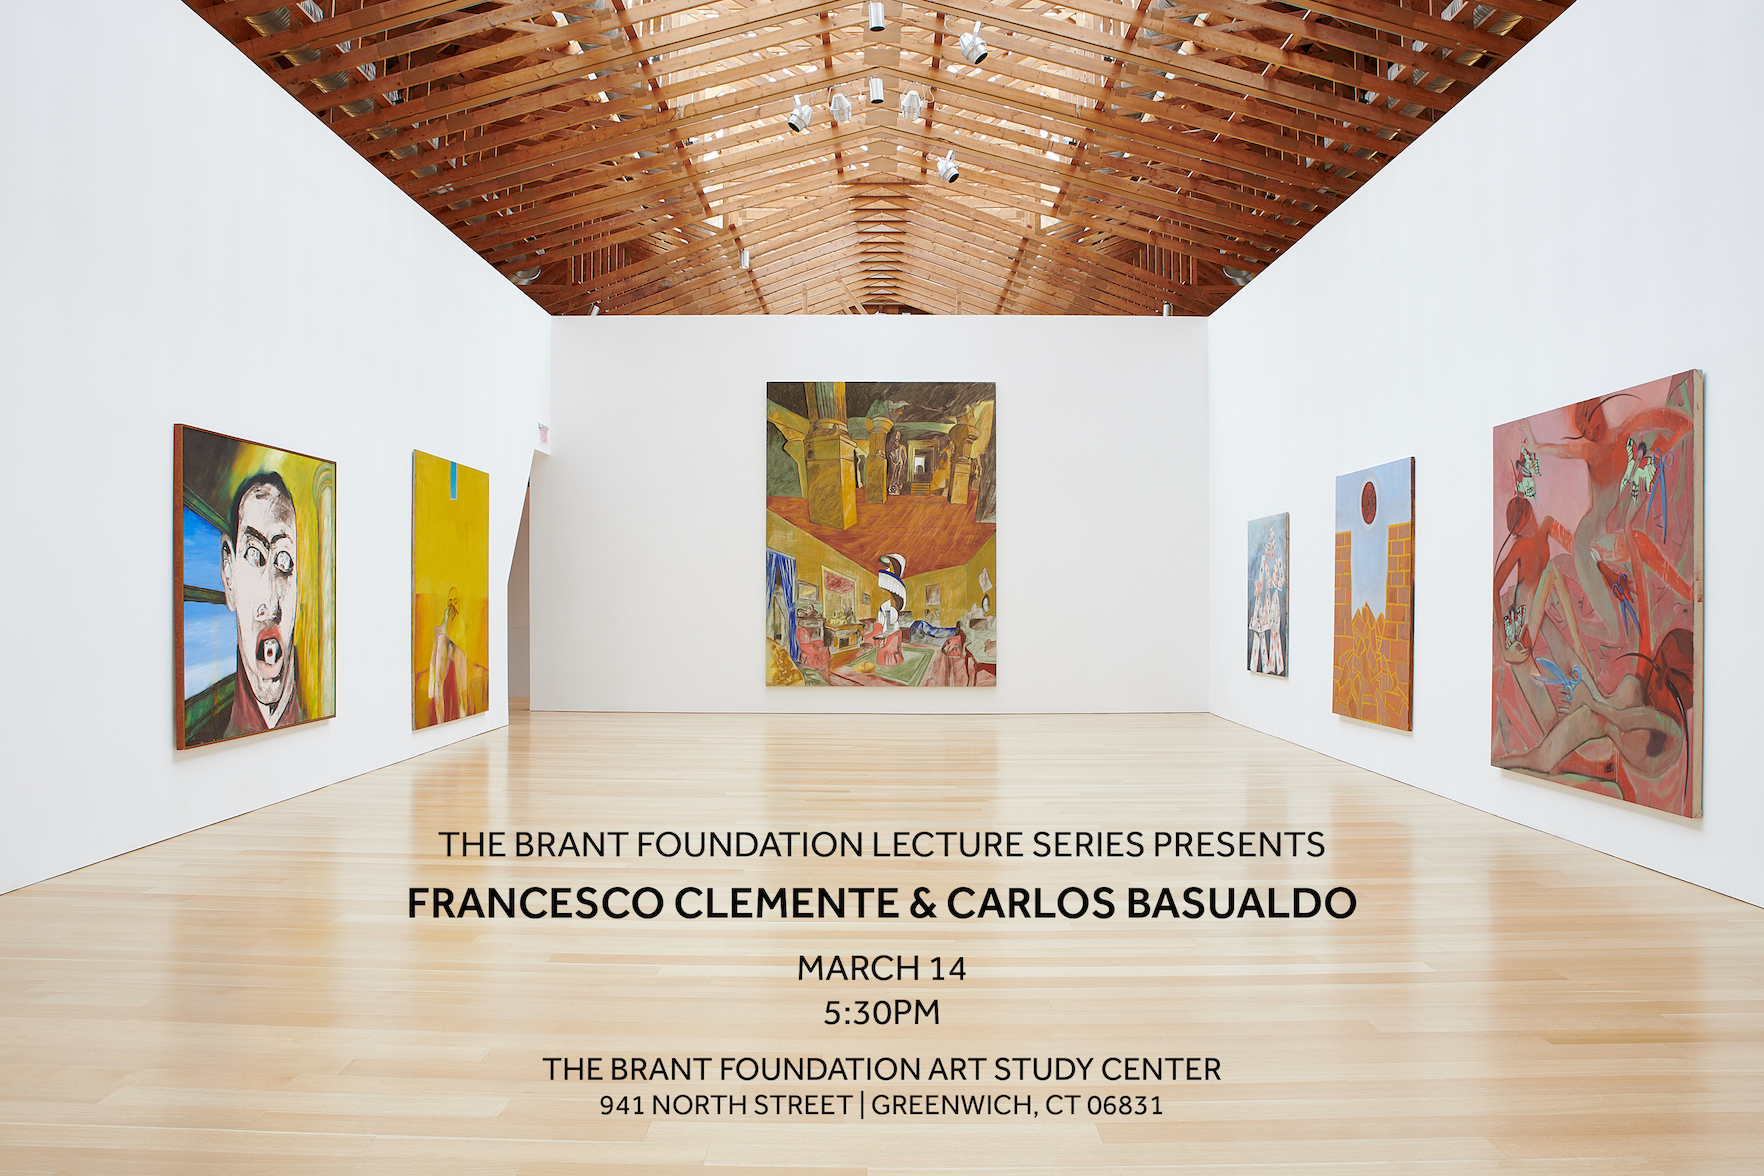 Francesco Clemente & Carlos Basualdo in Conversation